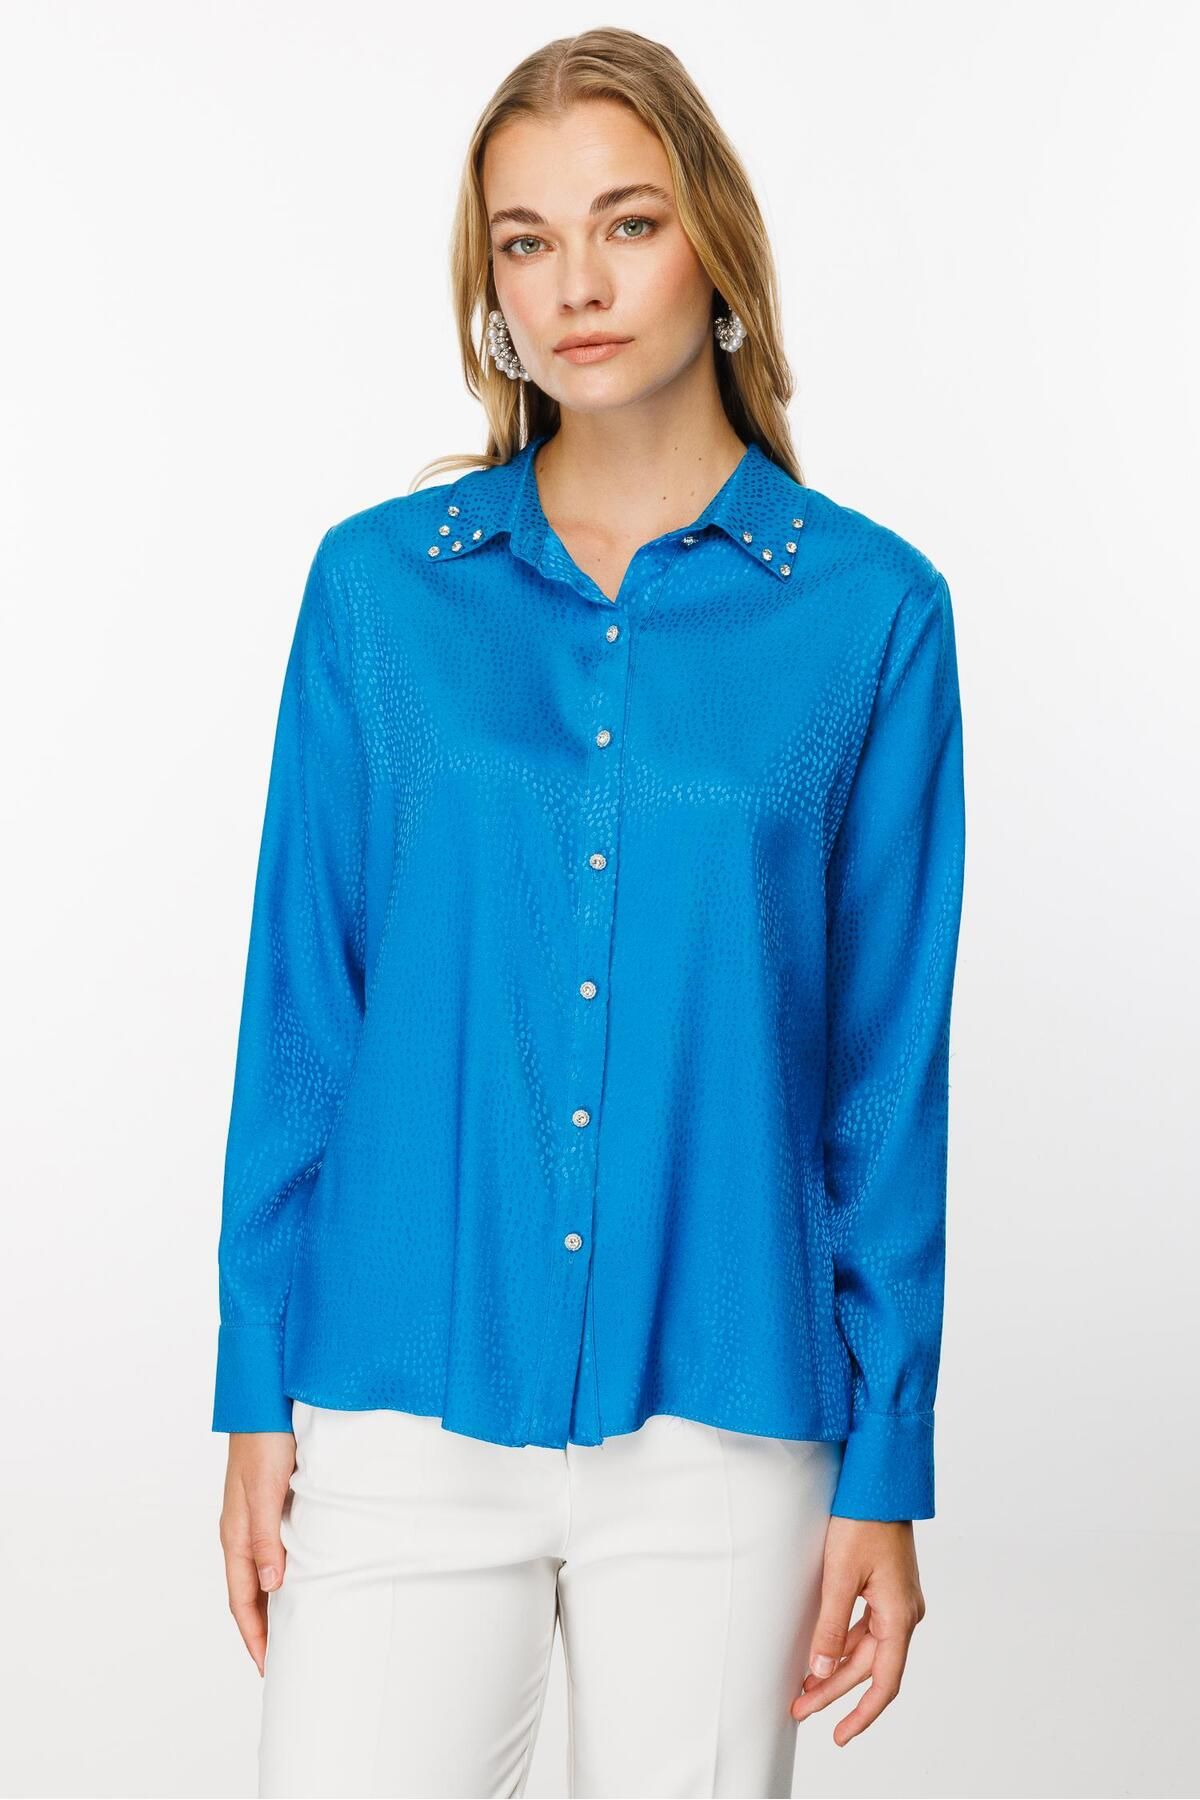 Moda İlgi Modailgi  Yakası Taşlı Puan Jakarlı Gömlek Mavi